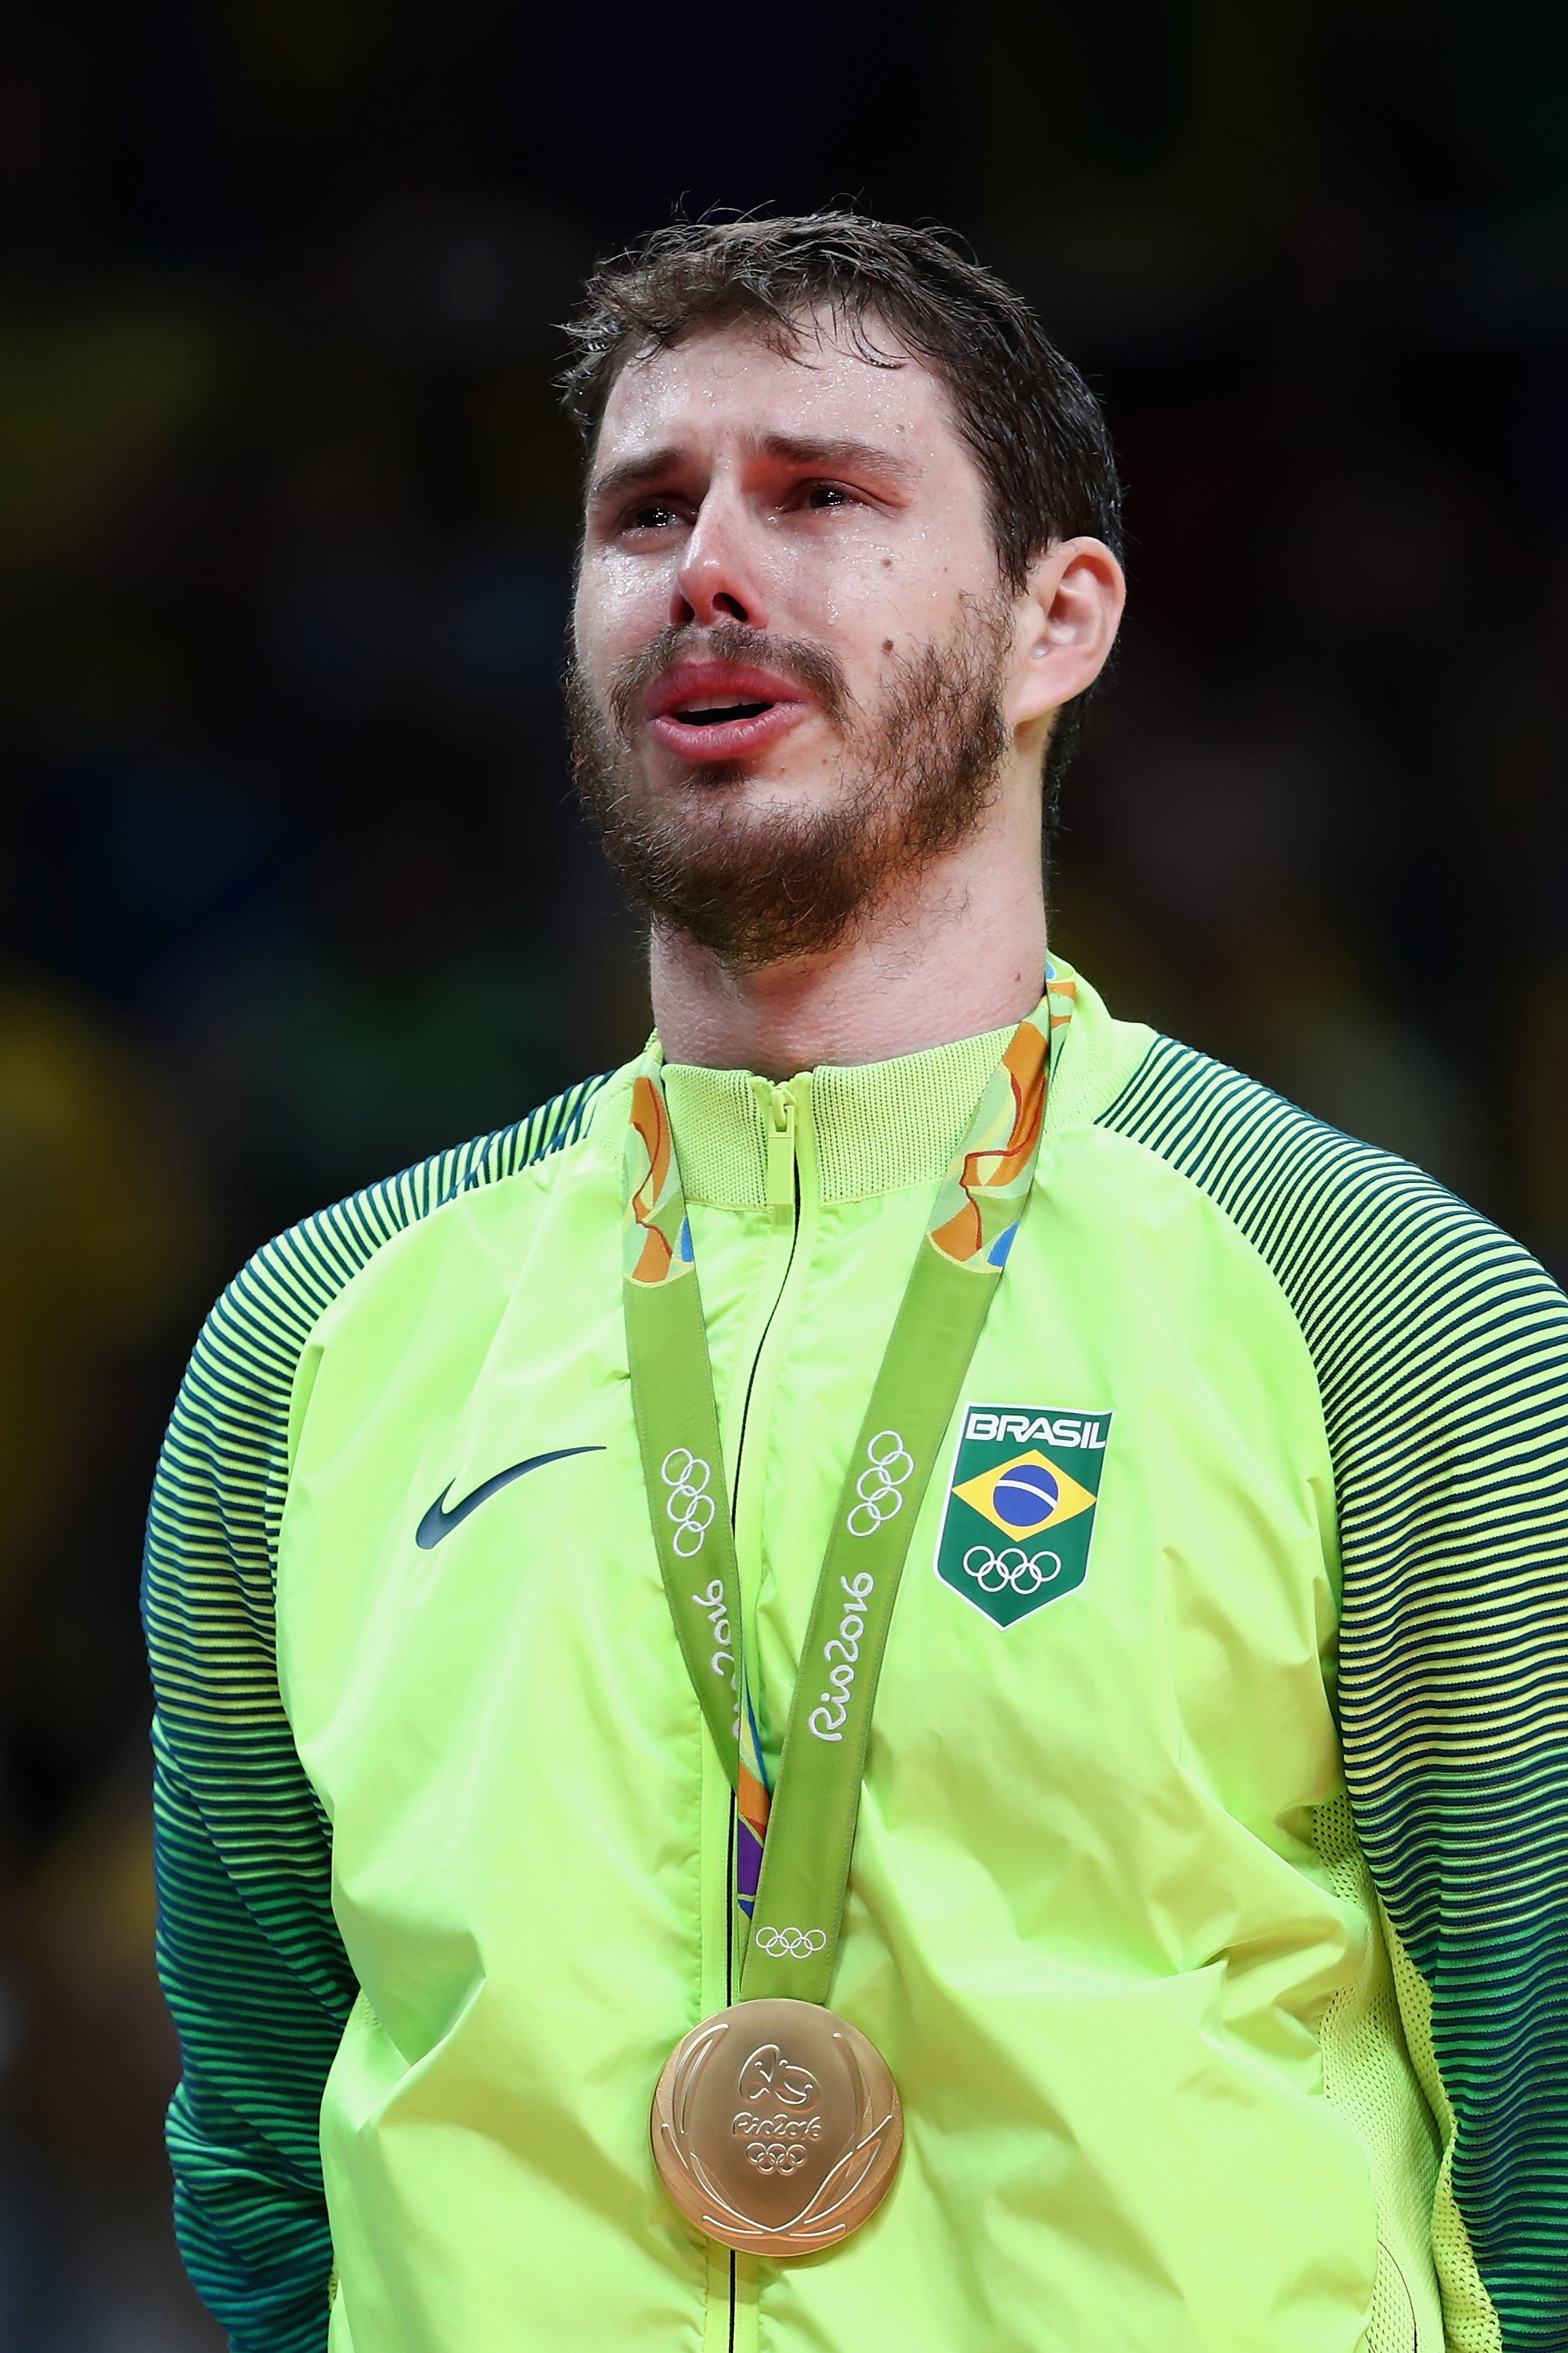 Emoção no pódio: Bruninho chora com a medalha olímpica no peito (Foto: Getty Images)